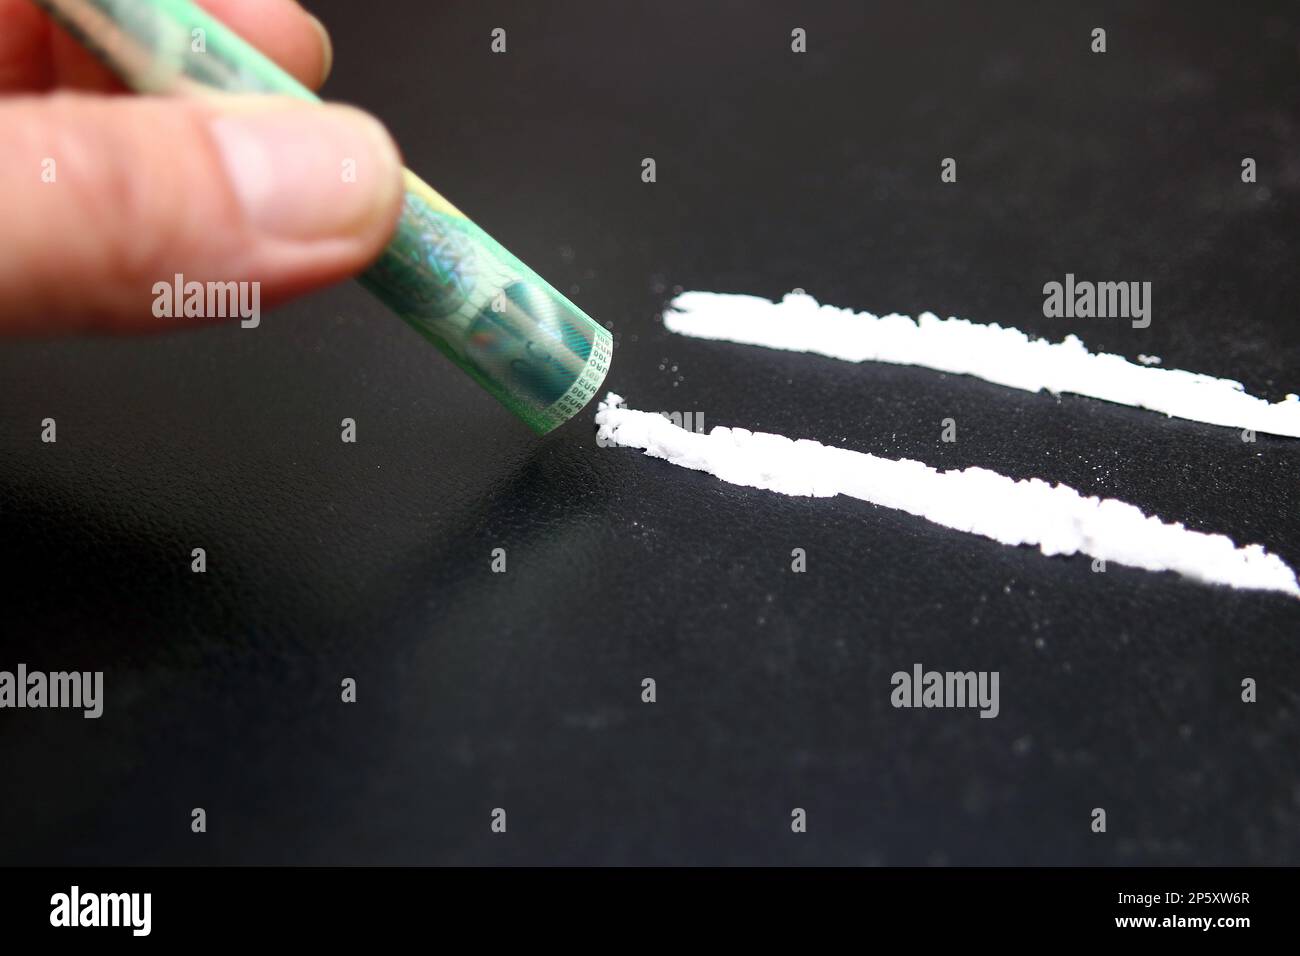 la cocaina viene russata con una banconota da 100 euro Foto Stock